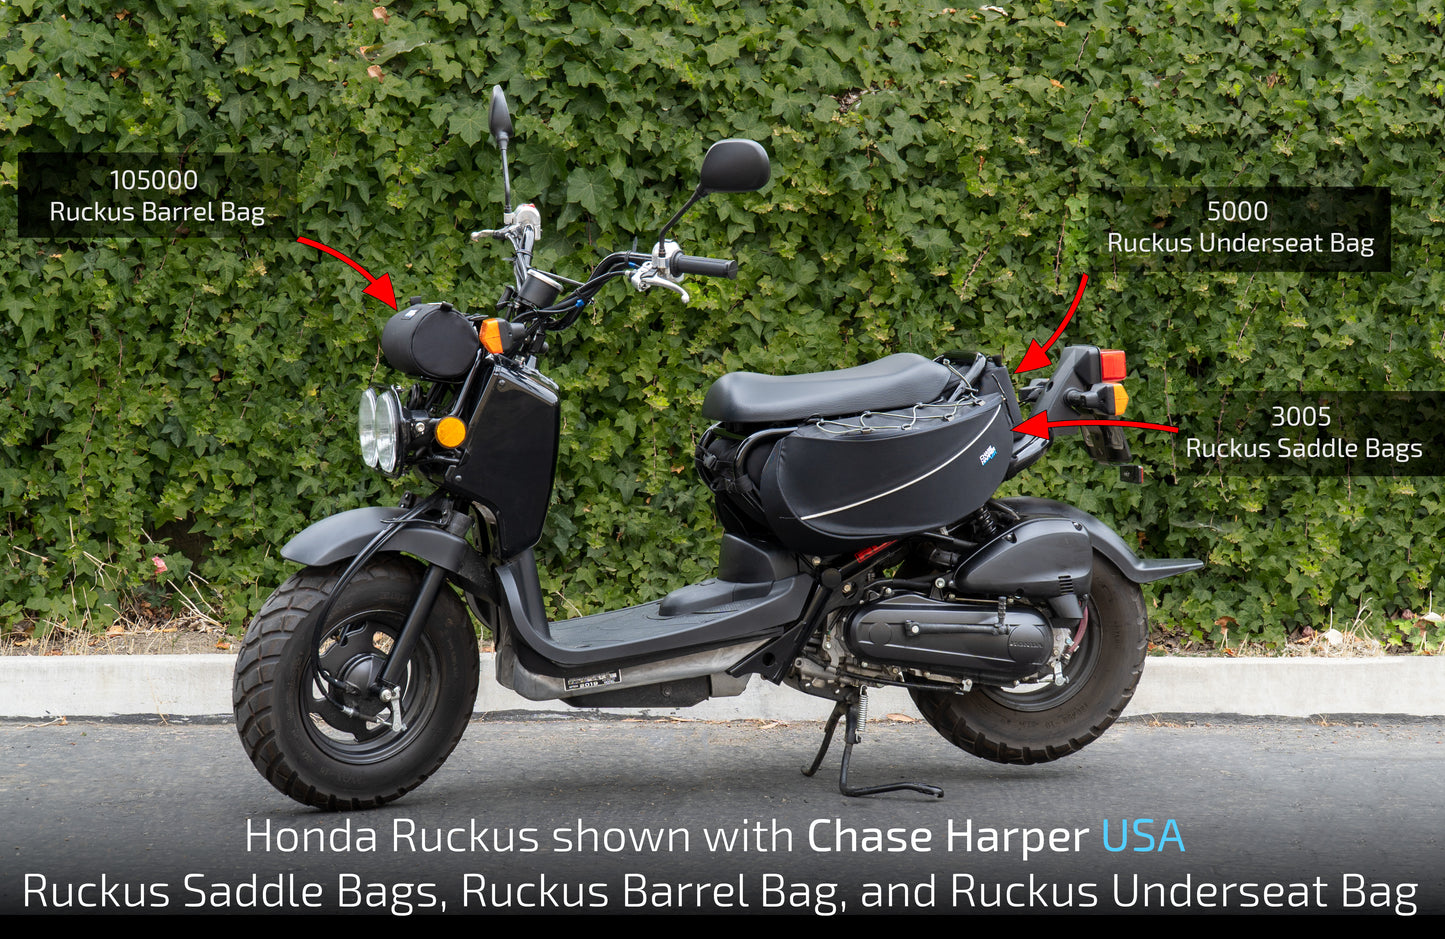 3005BC Honda Ruckus Saddle Bags